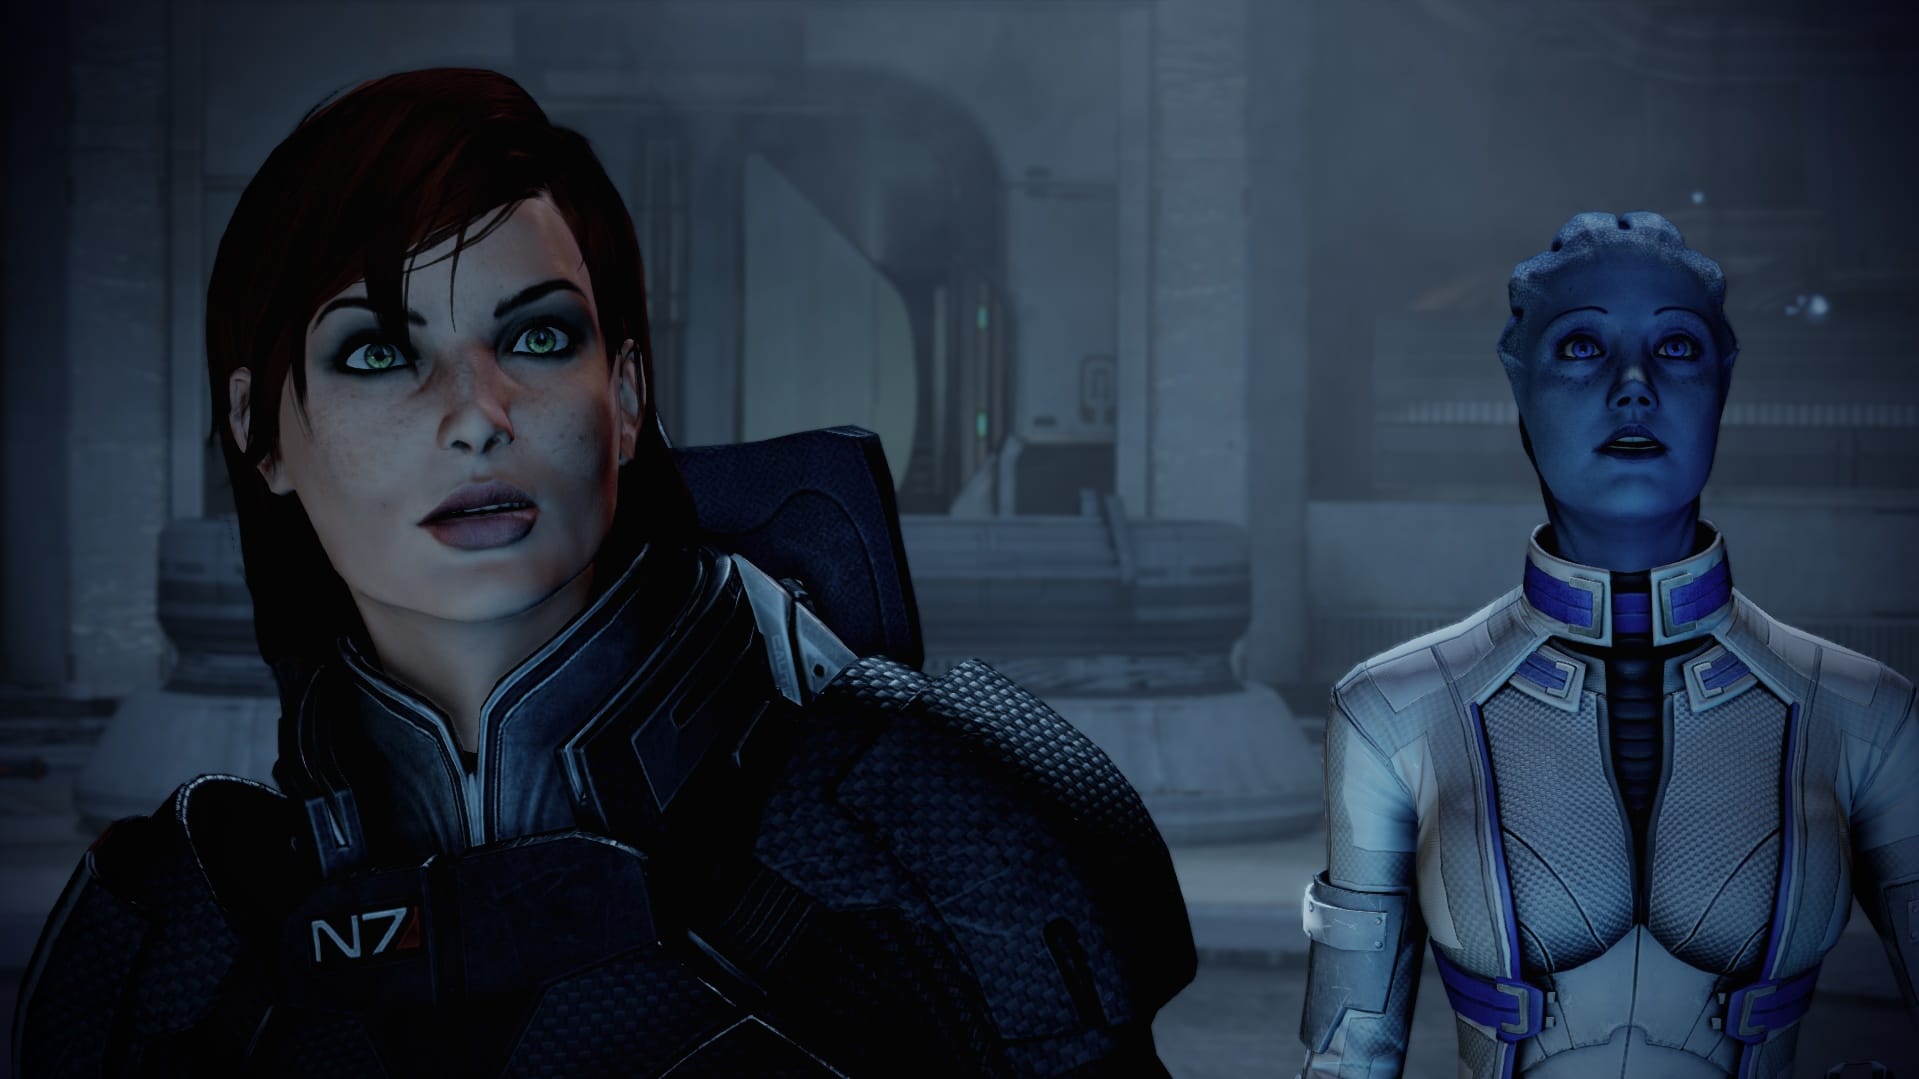 Gezichtsuitdrukkingen die boekdelen spreken. Mass Effect 2 is altijd goed voor een verrassing.